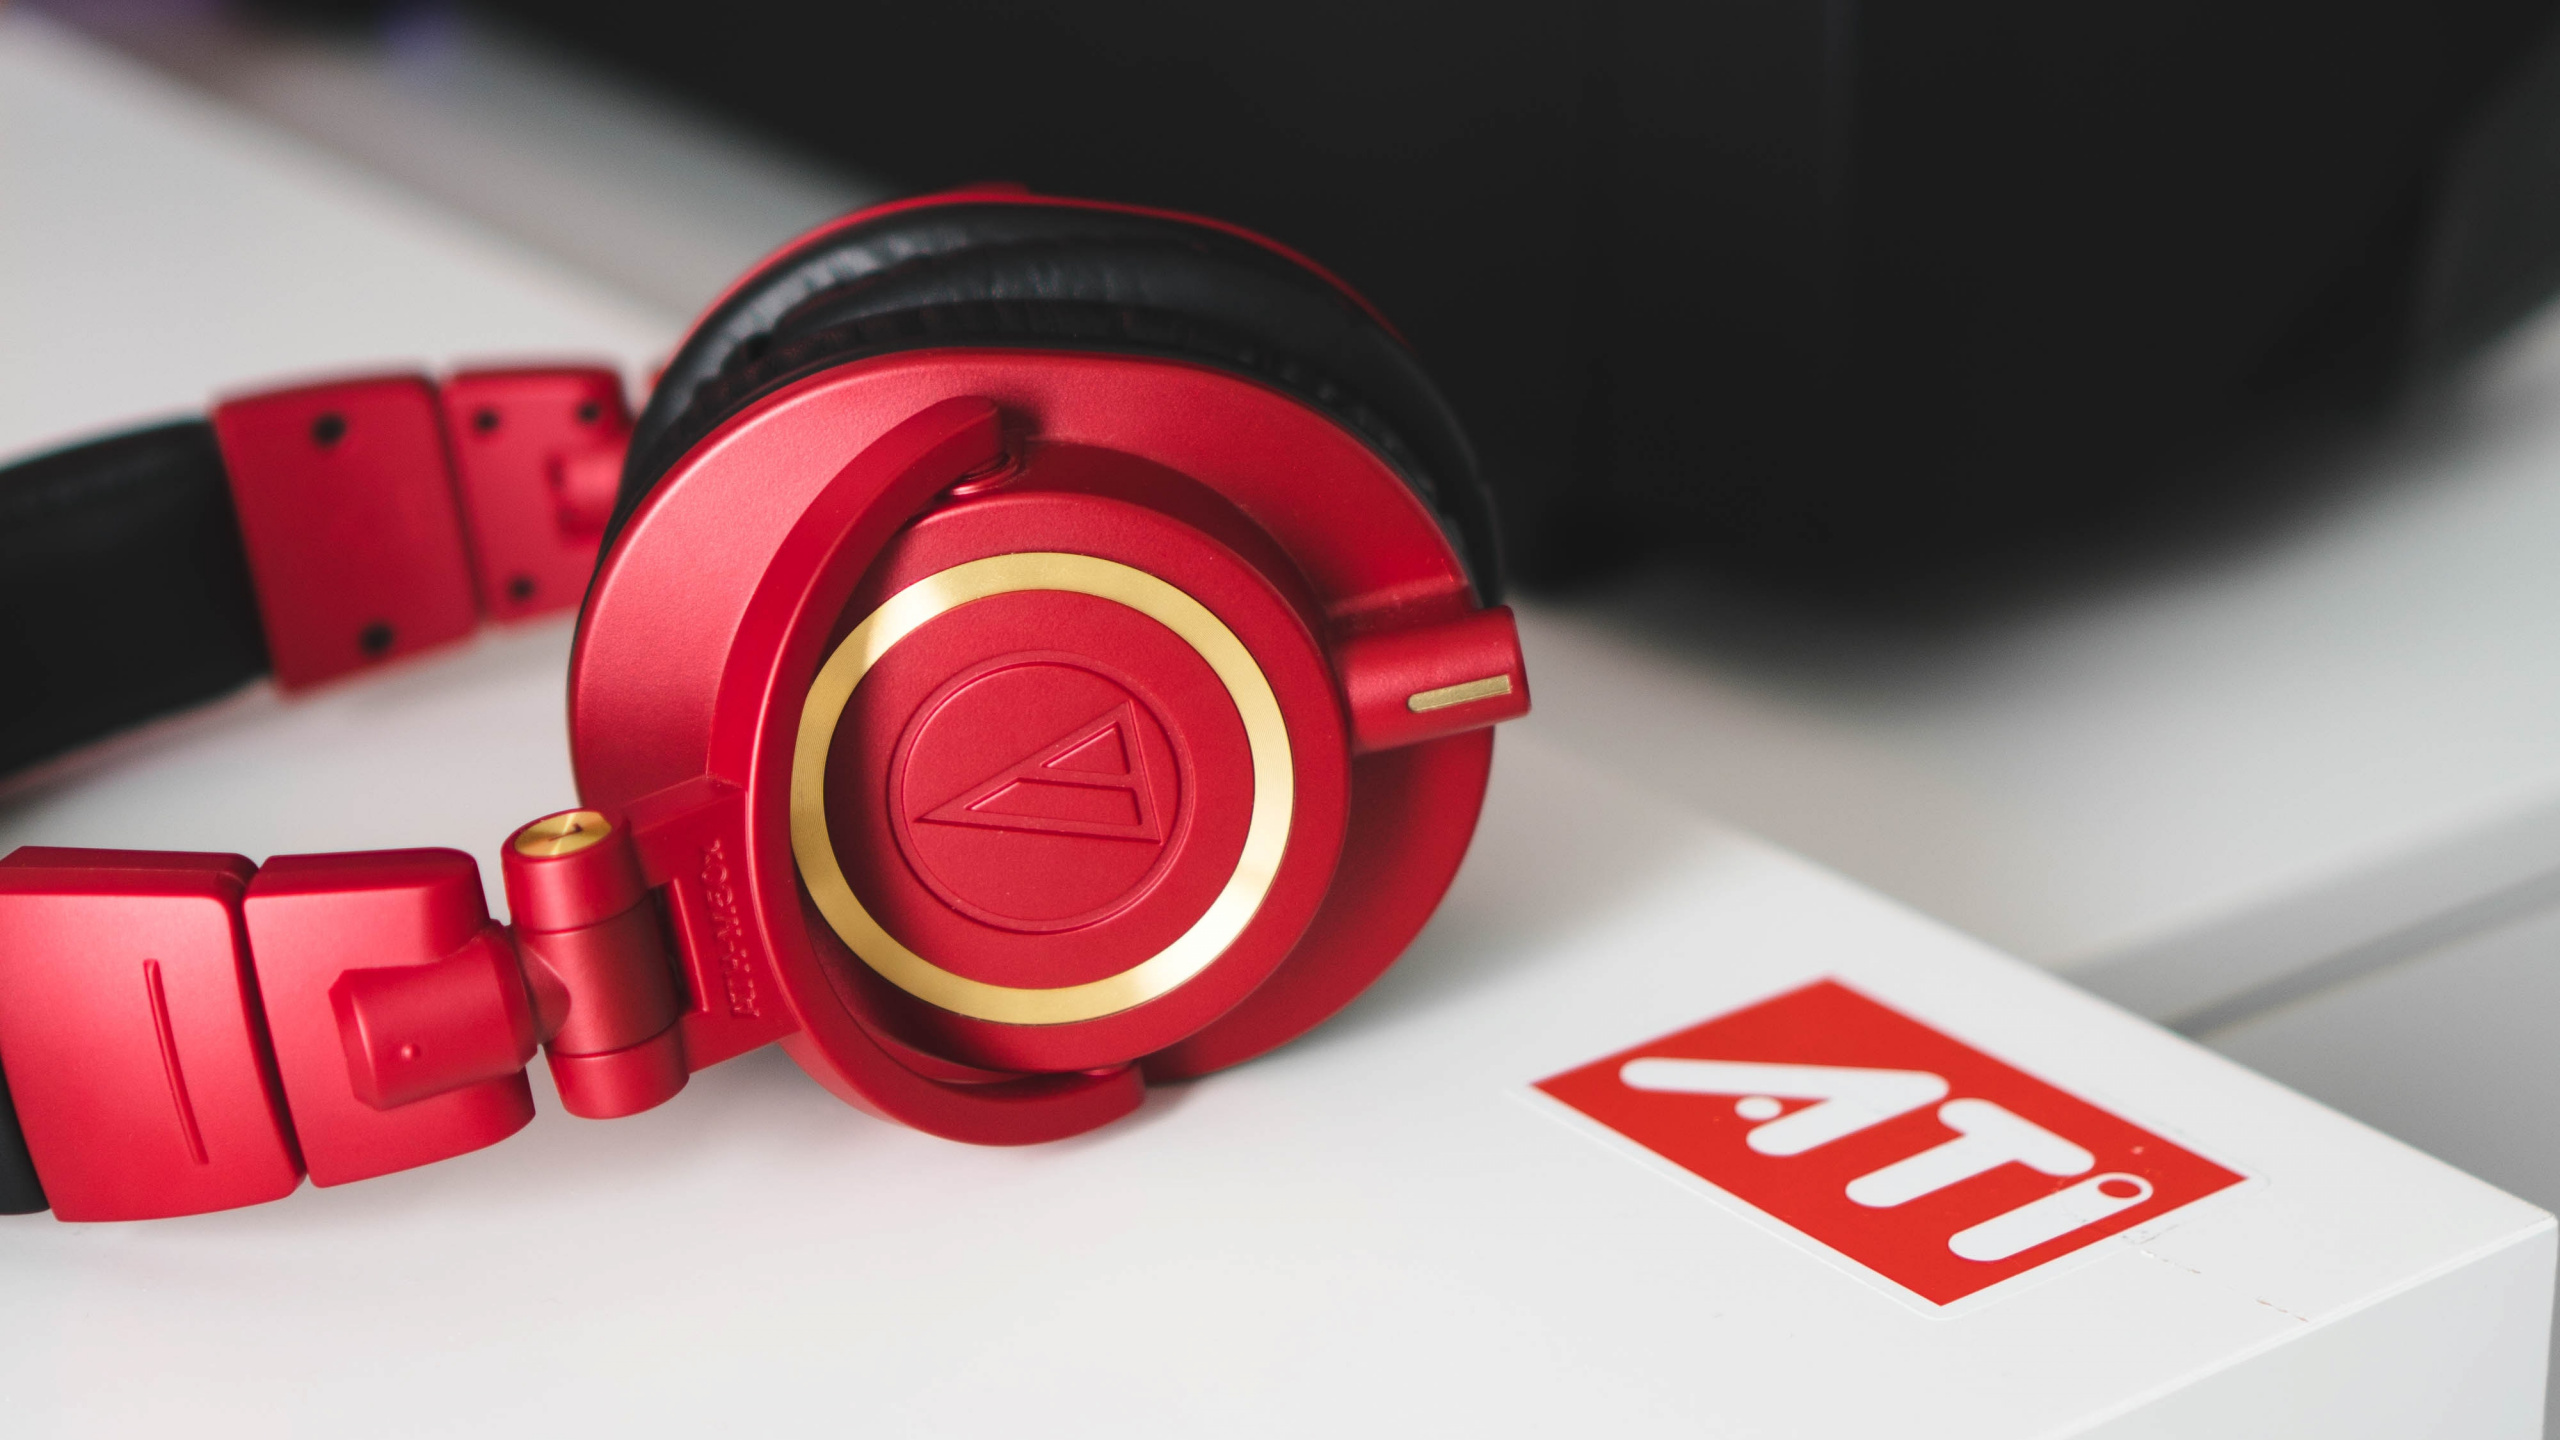 Auriculares, Rojo, Equipo de Audio, Gadget, Dispositivo Electrónico. Wallpaper in 2560x1440 Resolution